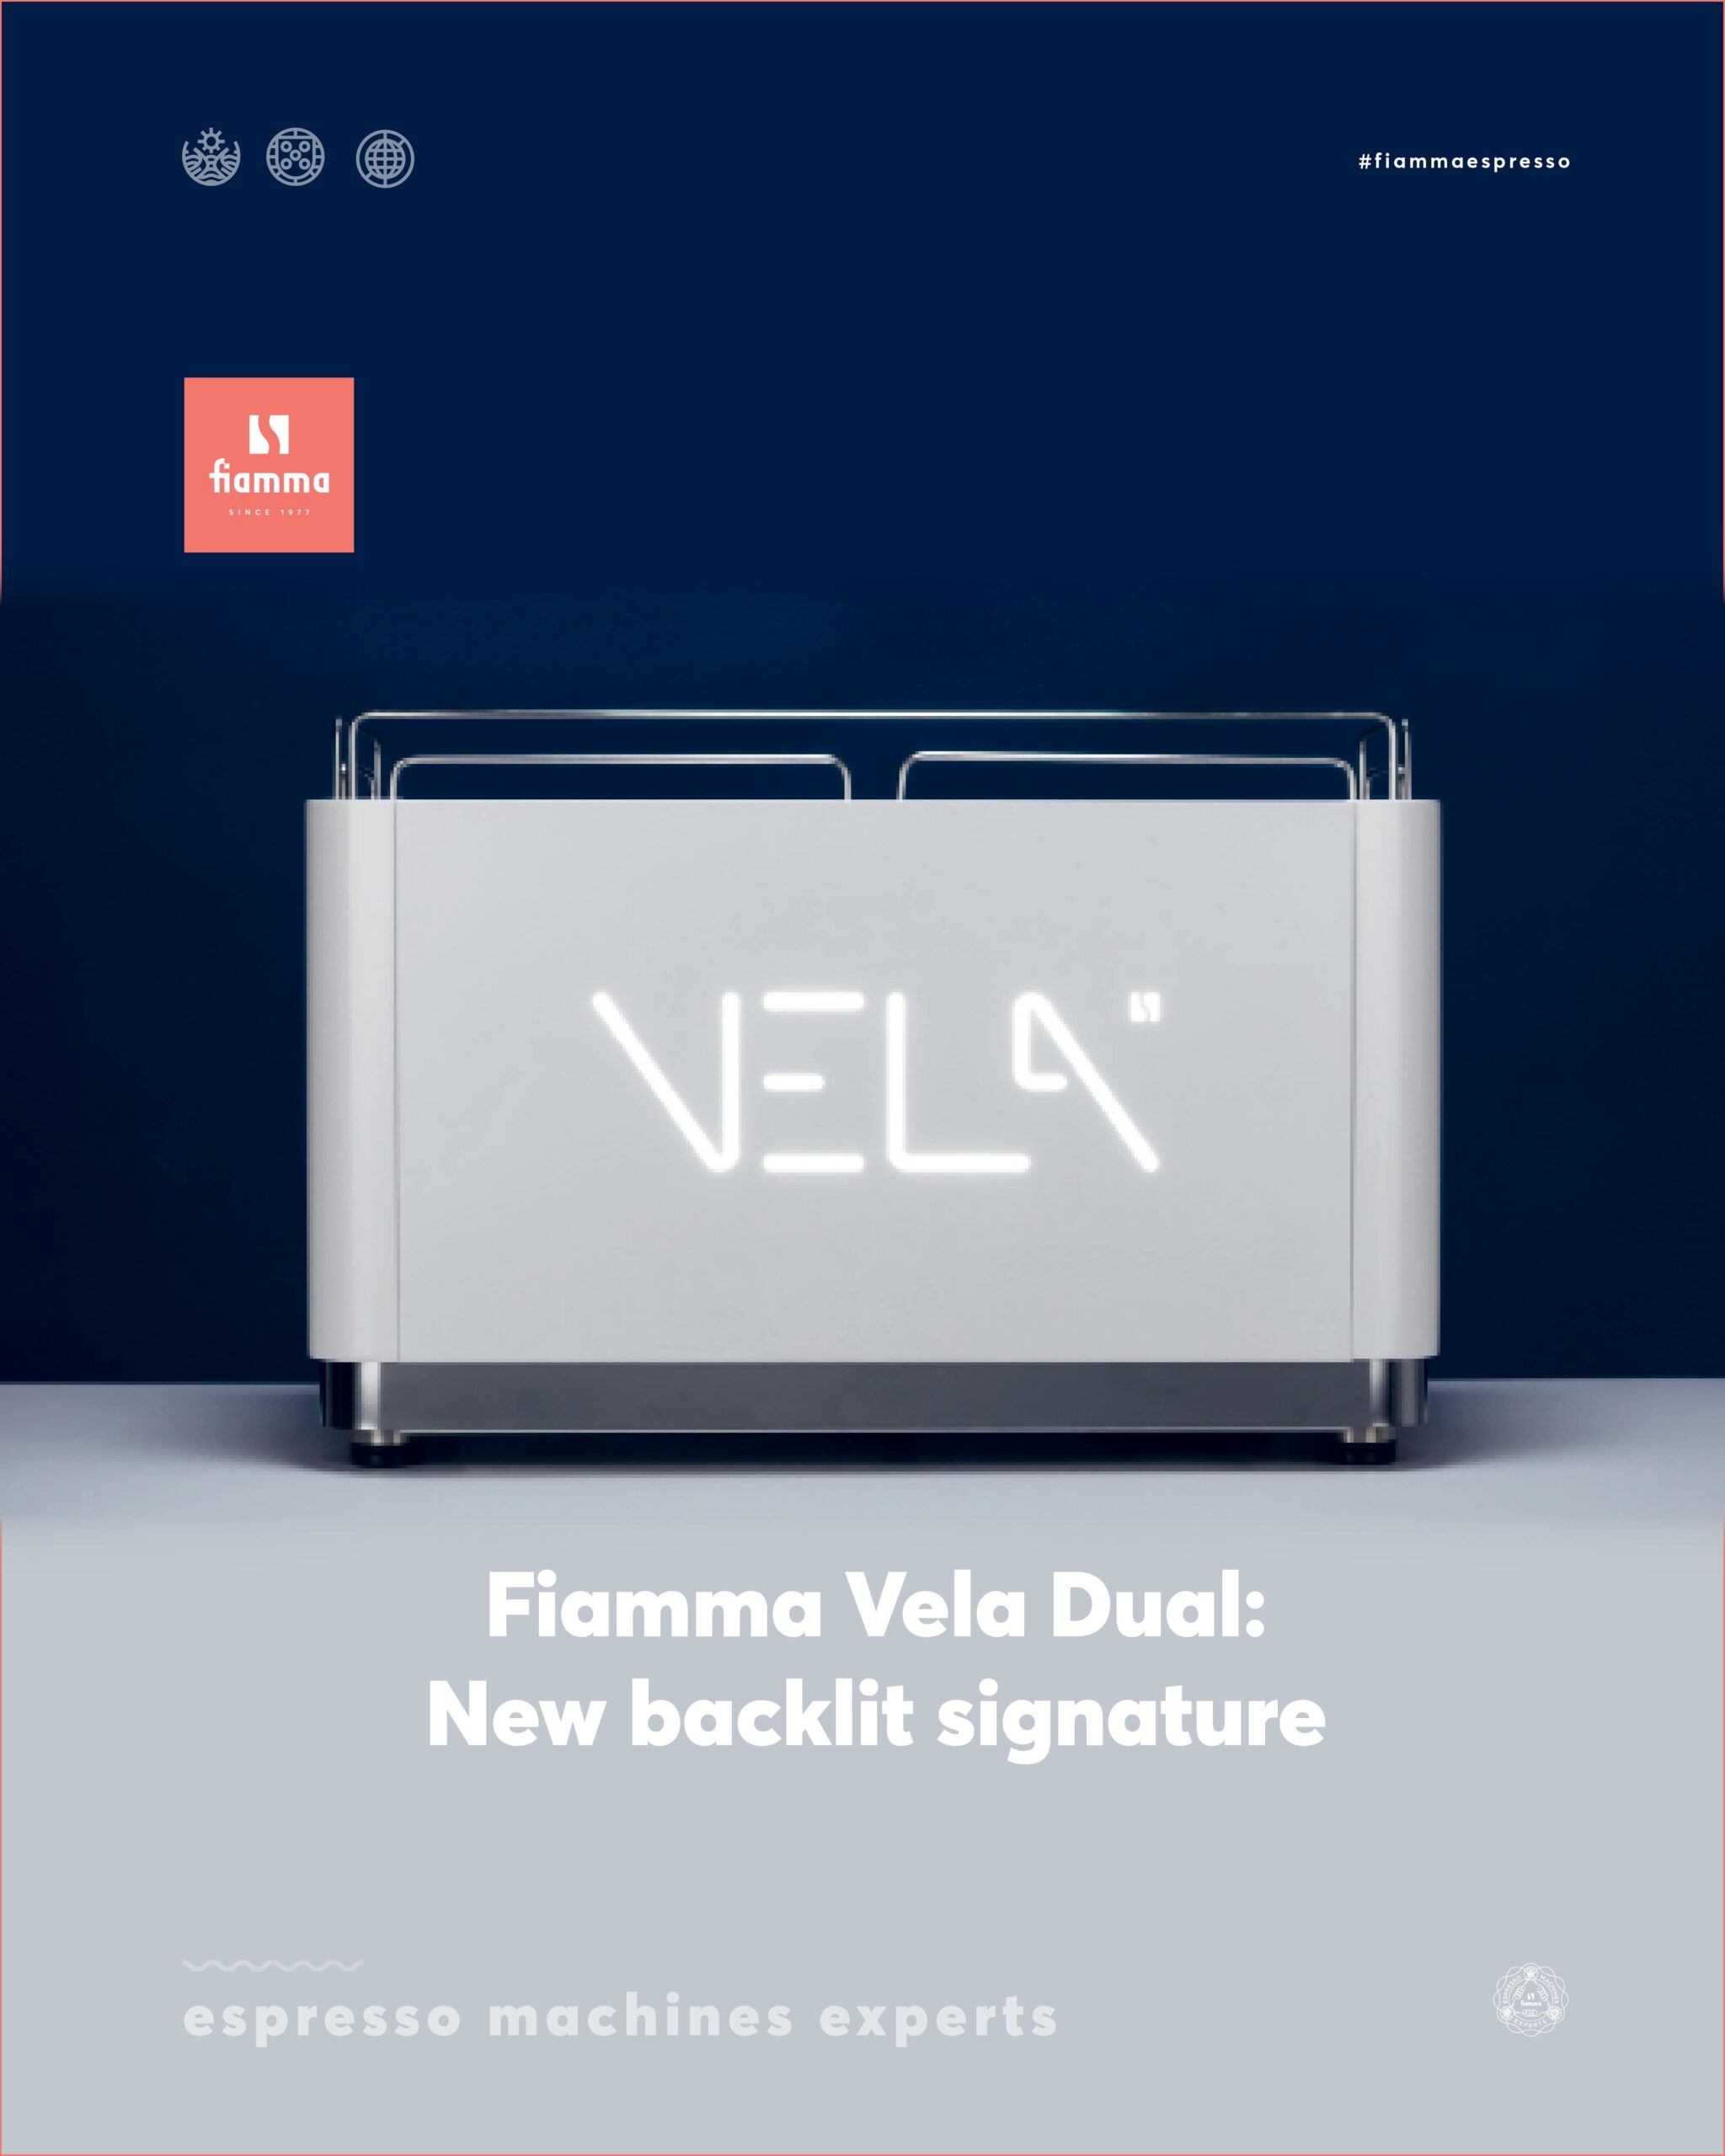 Update: Fiamma Vela Dual with Signature Panel